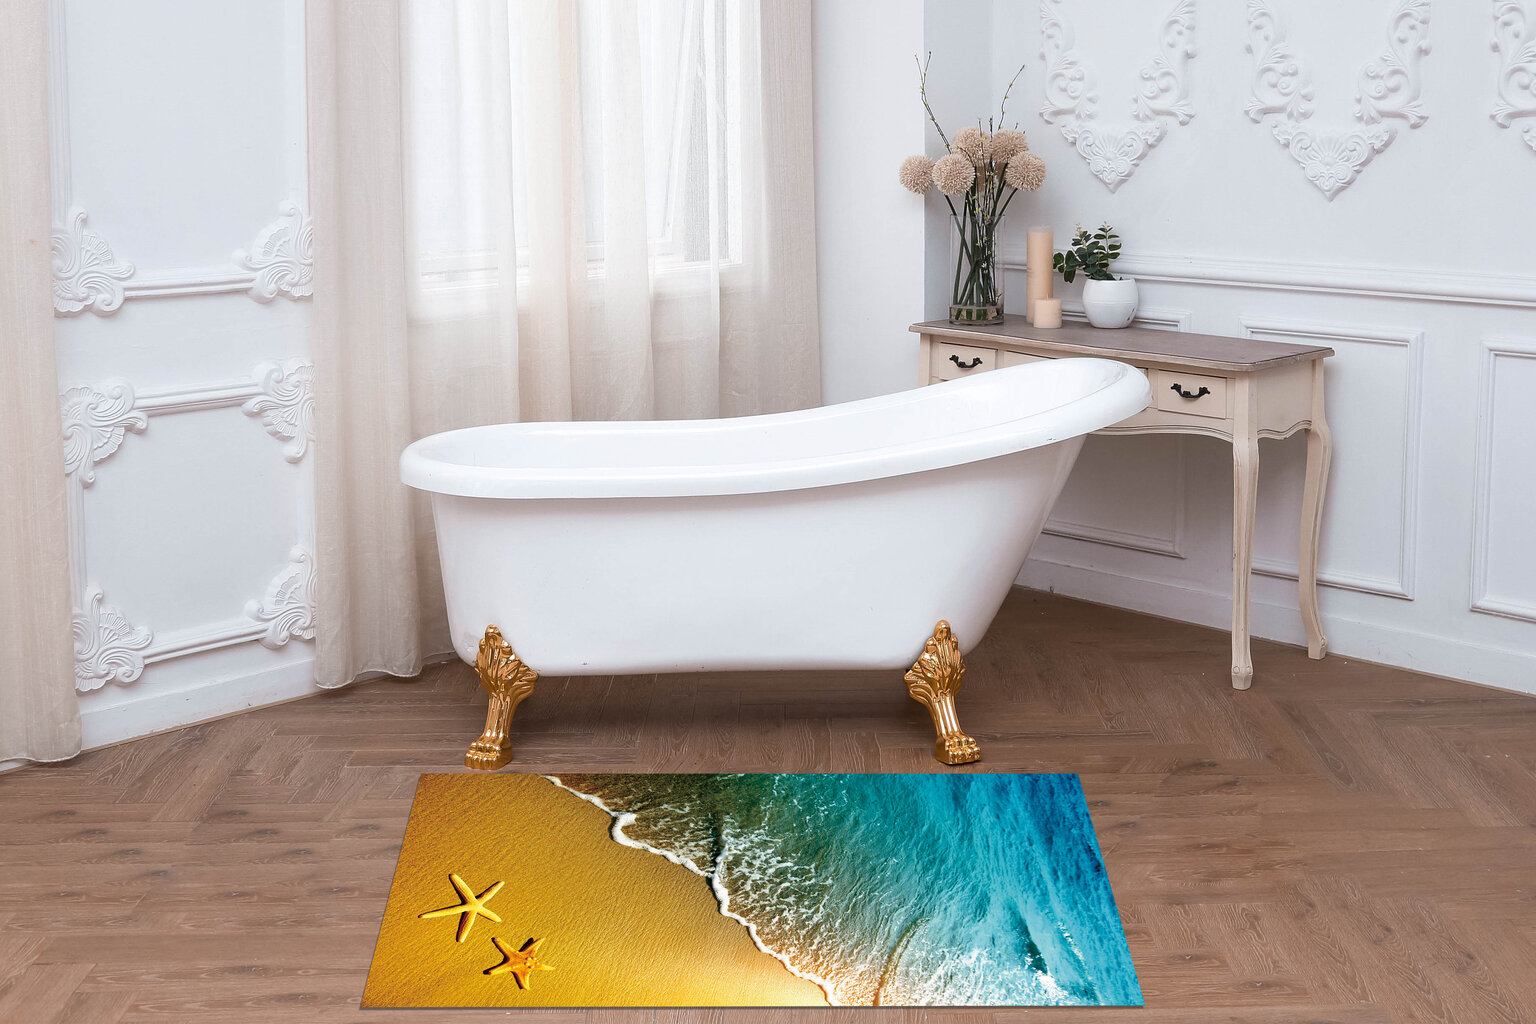 Vonios kilimėlis "Benedomo" 60x100 cm kaina ir informacija | Vonios kambario aksesuarai | pigu.lt